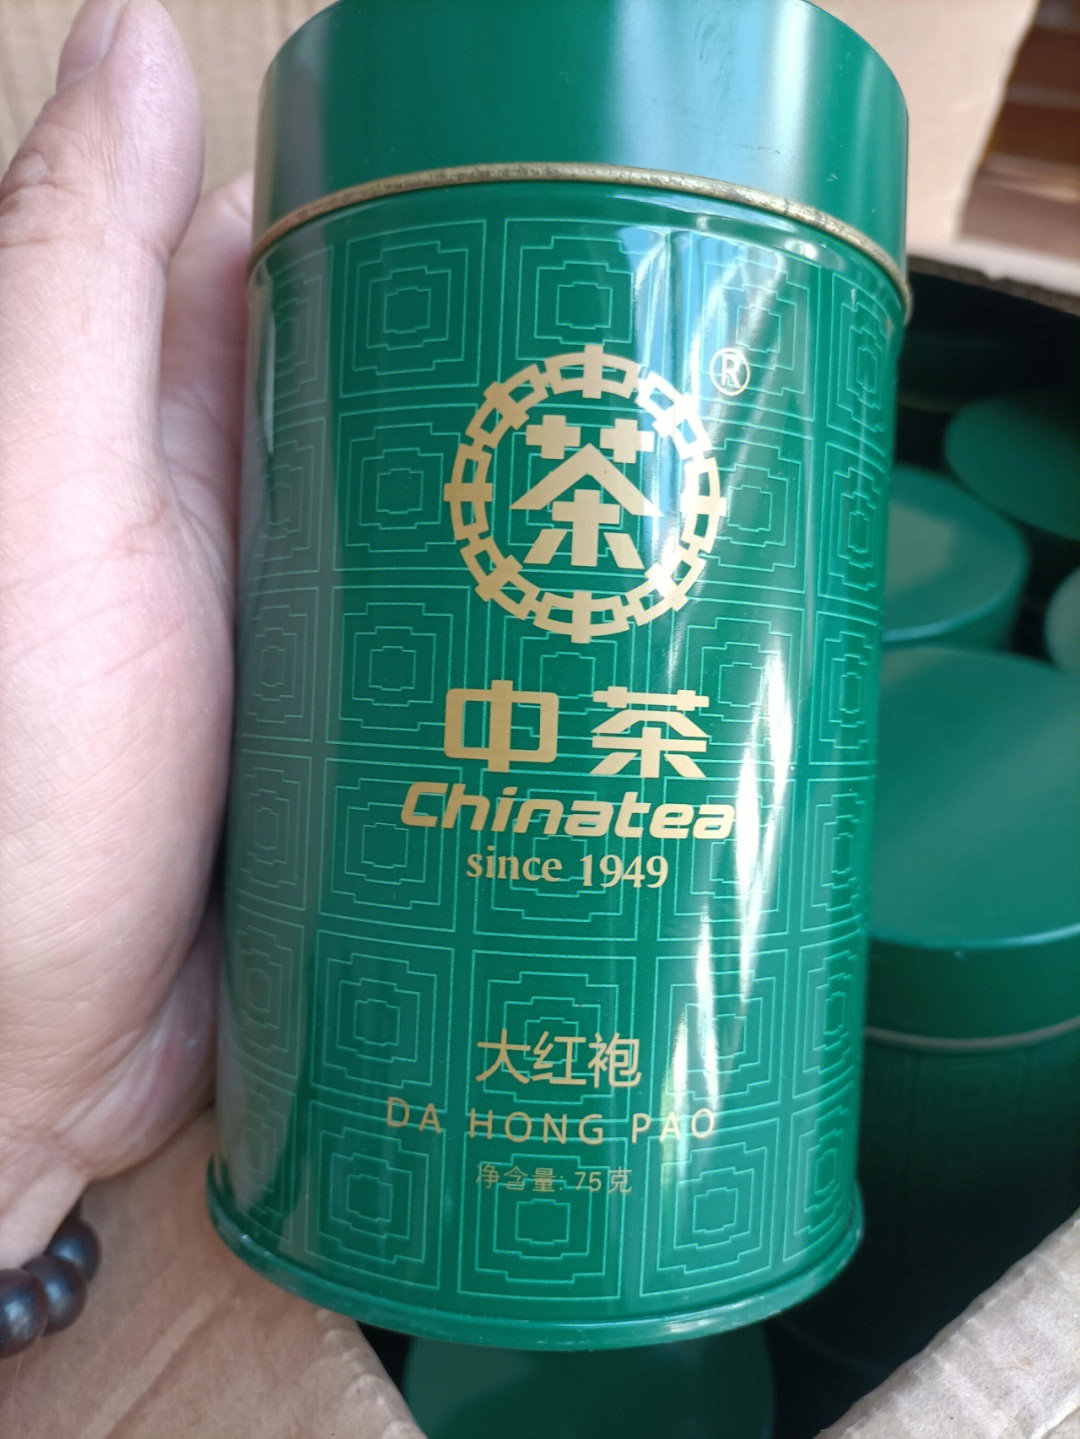 中国最贵的茶叶图片